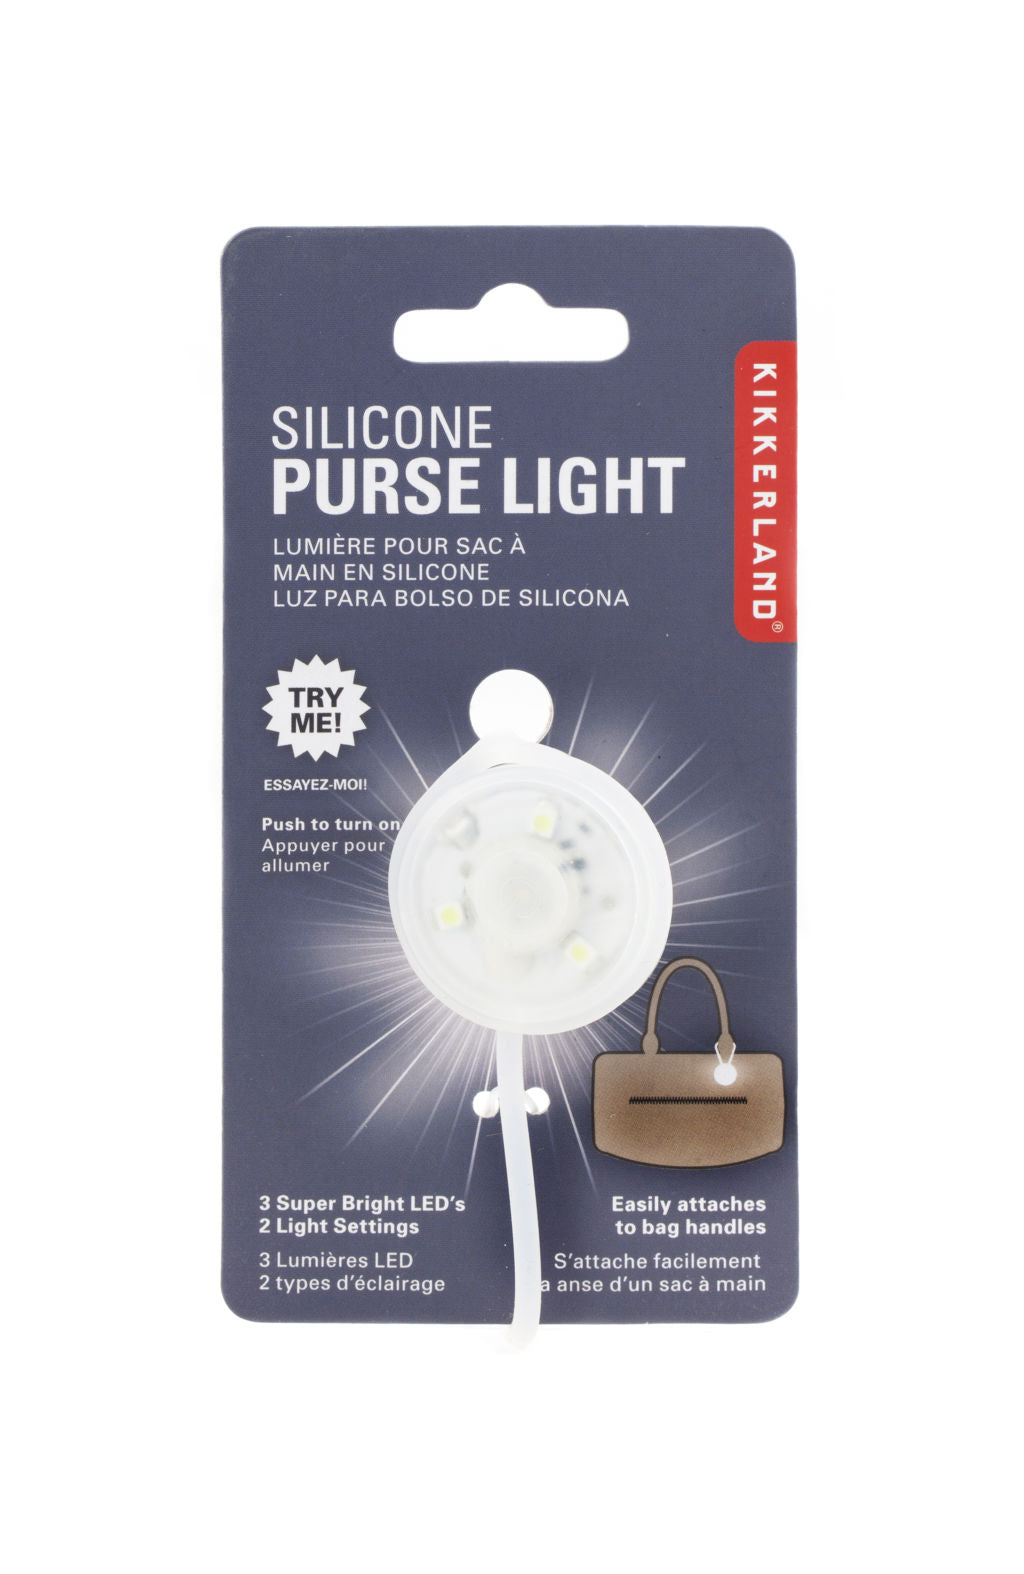 Silicone Purse Light